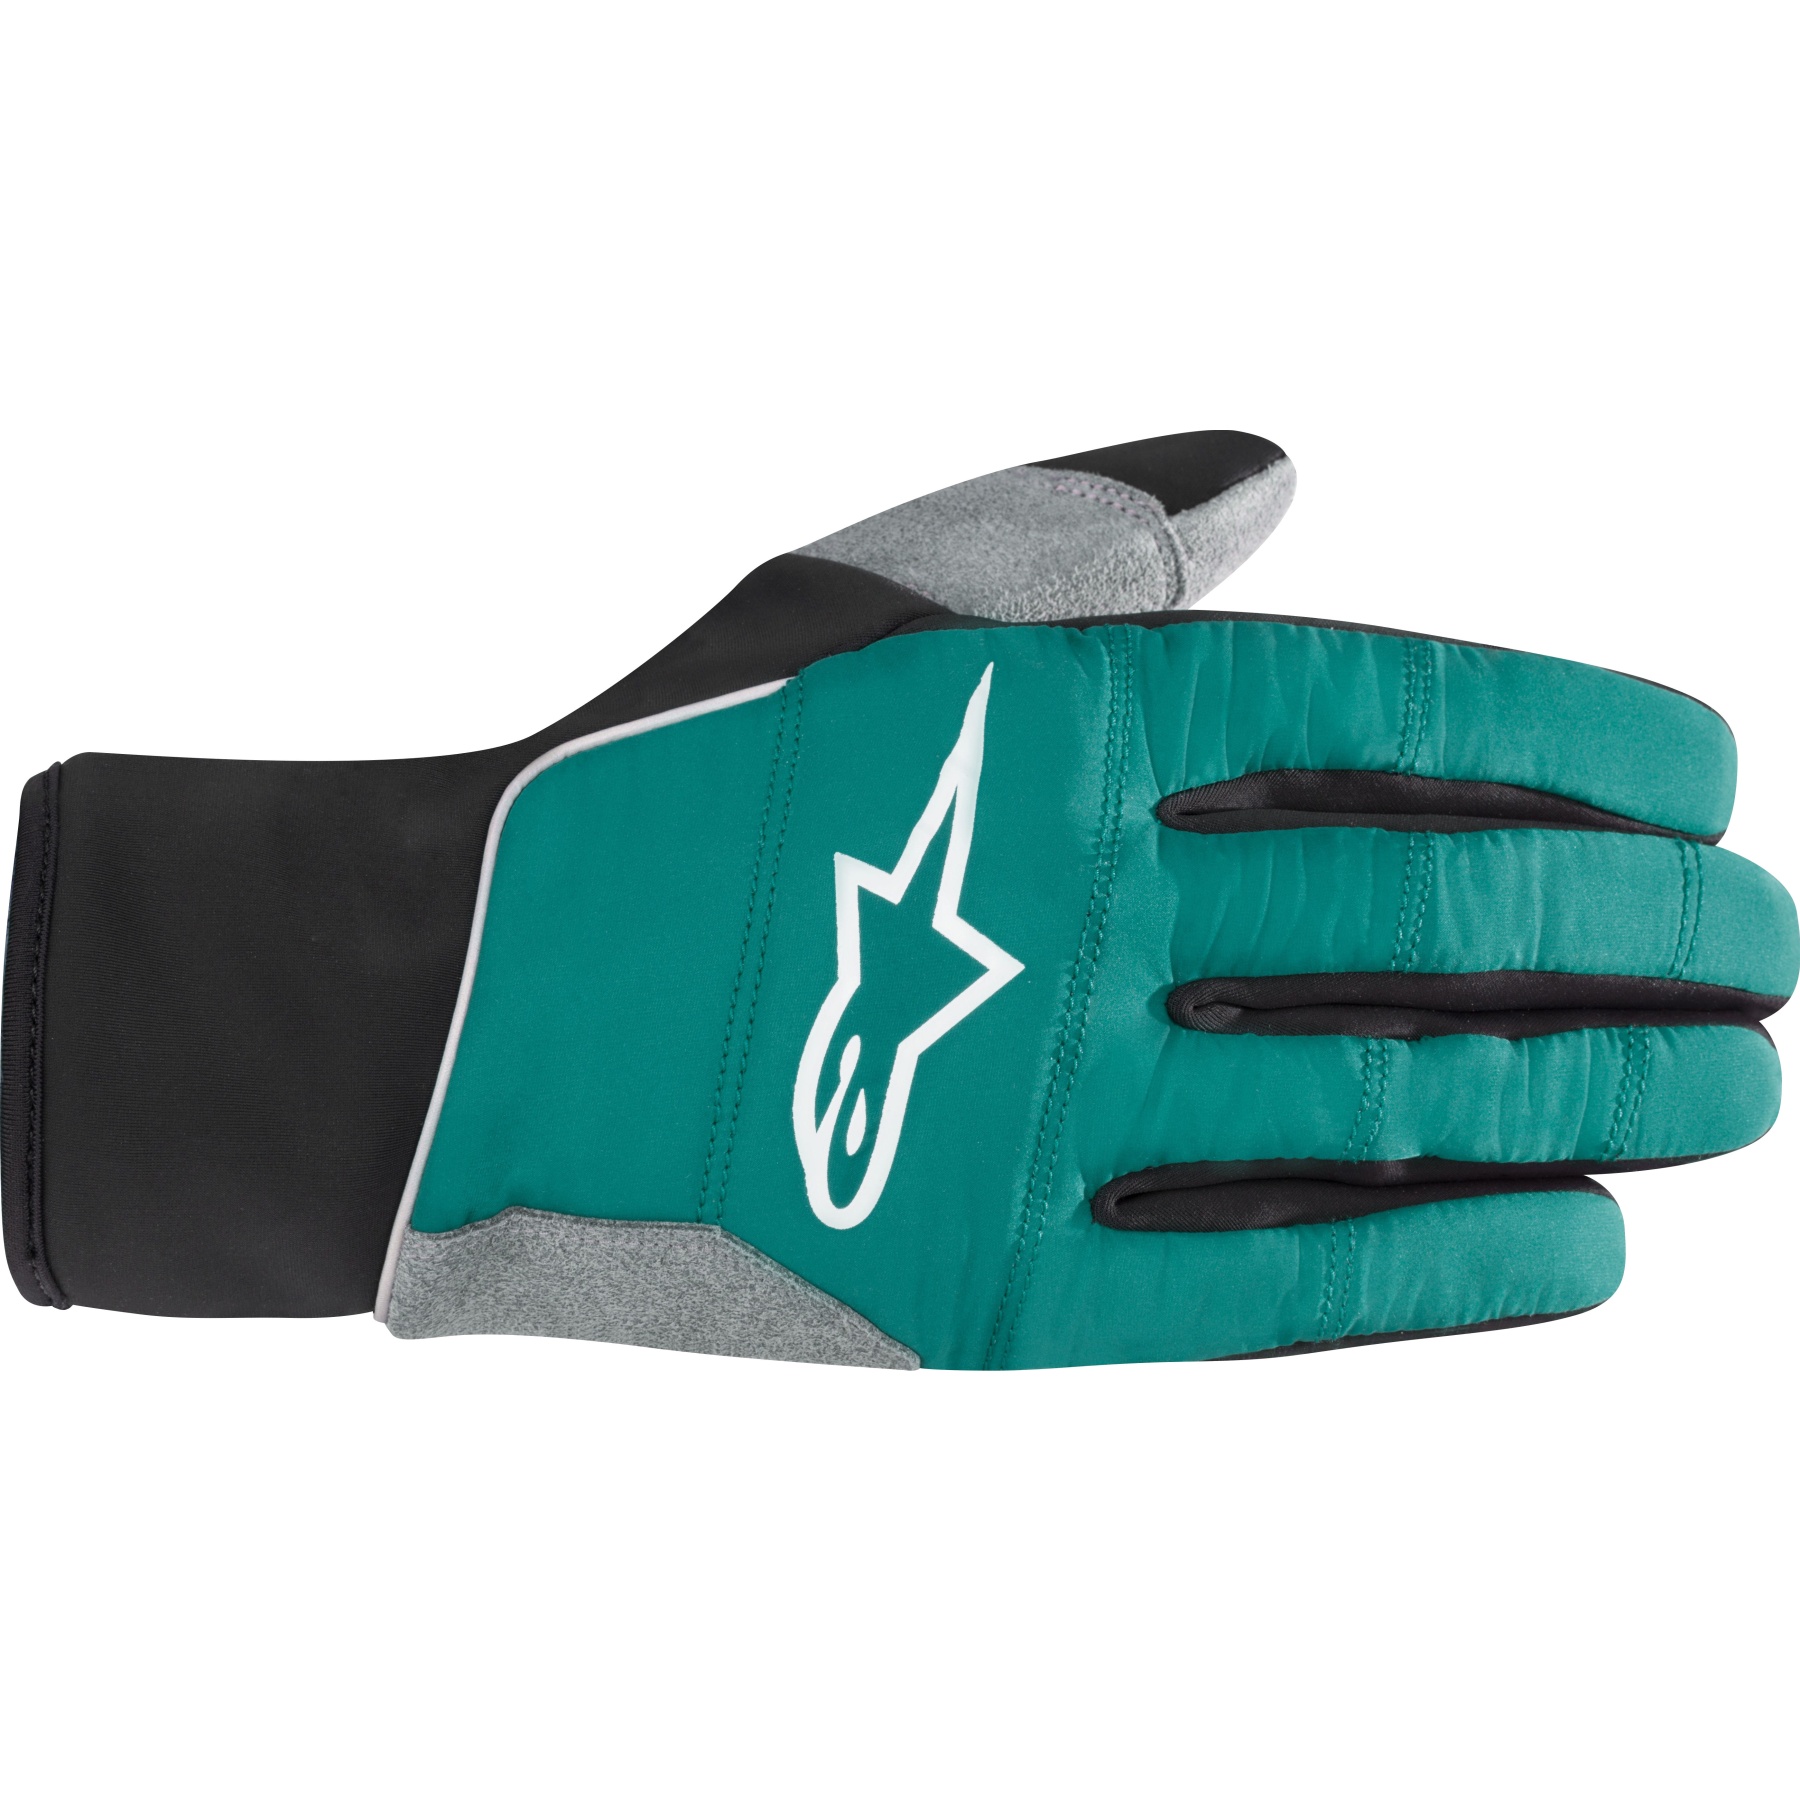 Bild von Alpinestars Cascade Warm Tech Handschuhe - emerald/black